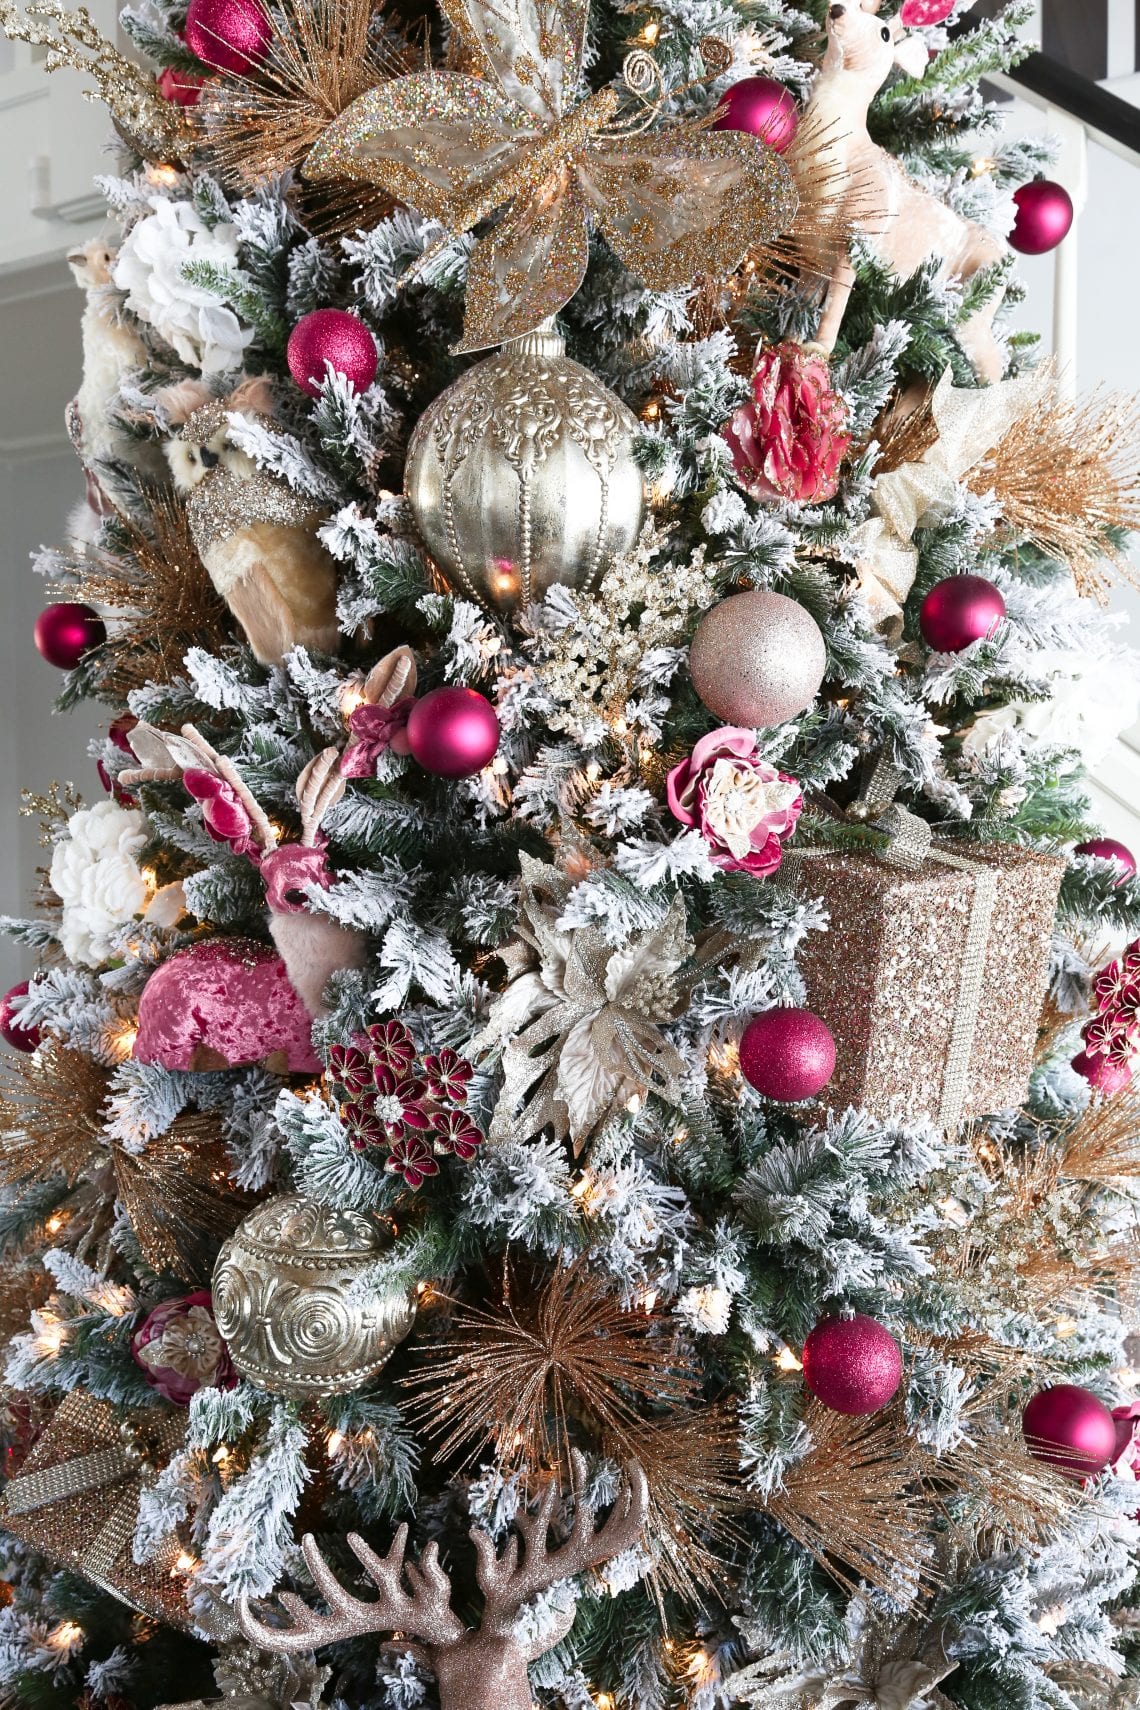 DIY Christmas Tree - Savannah's Pink Christmas Tree